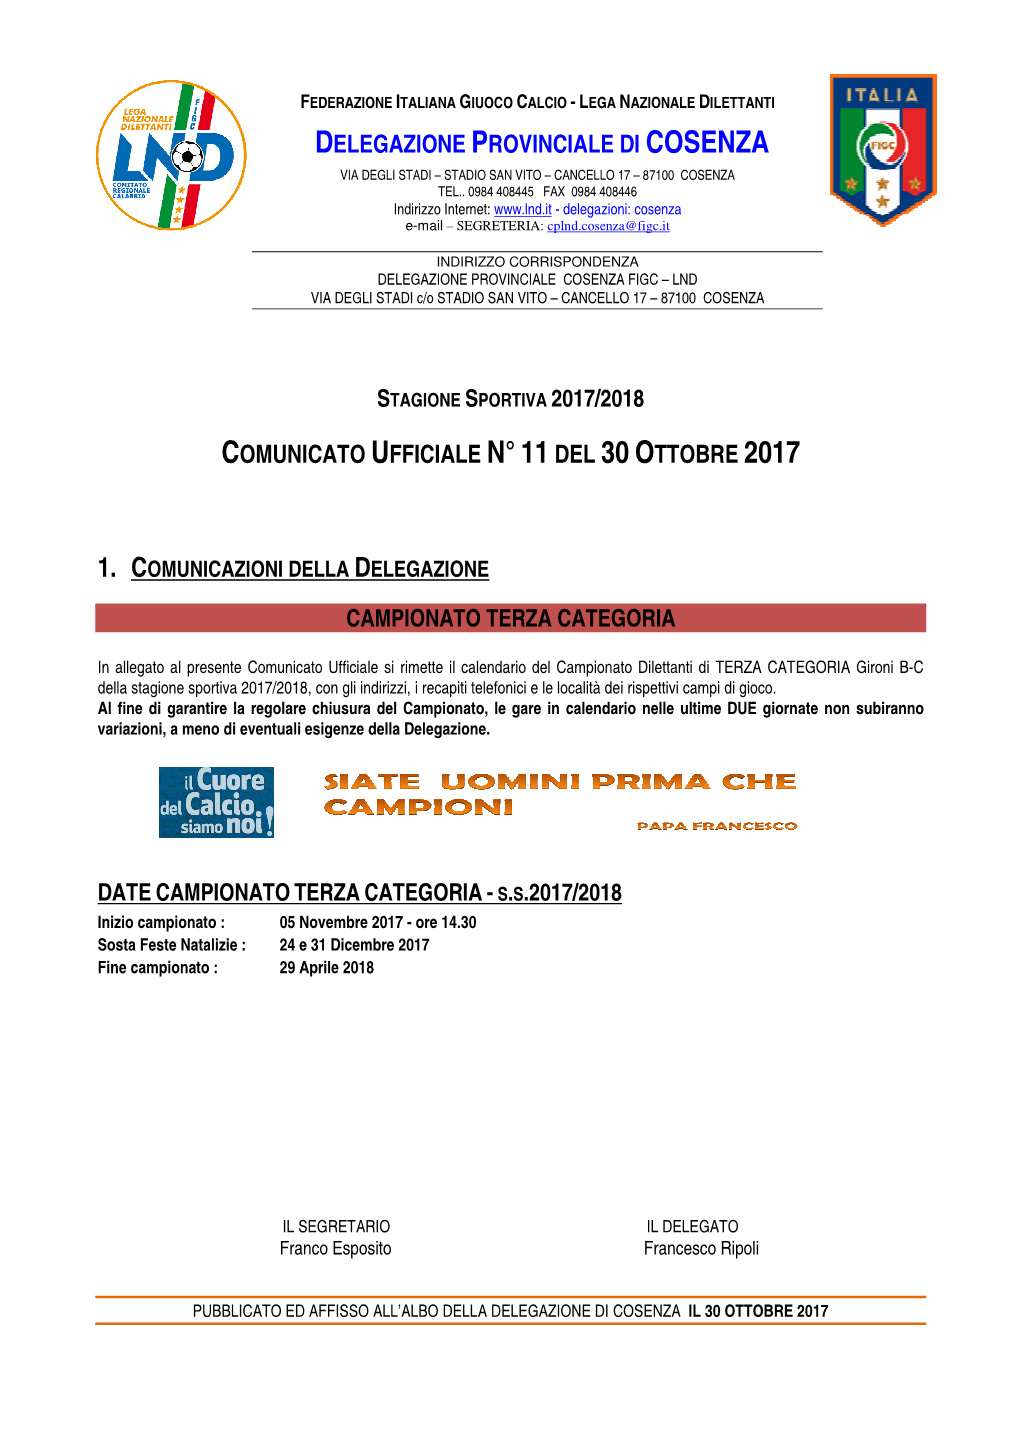 Stagione Sportiva 2017/2018, Con Gli Indirizzi, I Recapiti Telefonici E Le Località Dei Rispettivi Campi Di Gioco